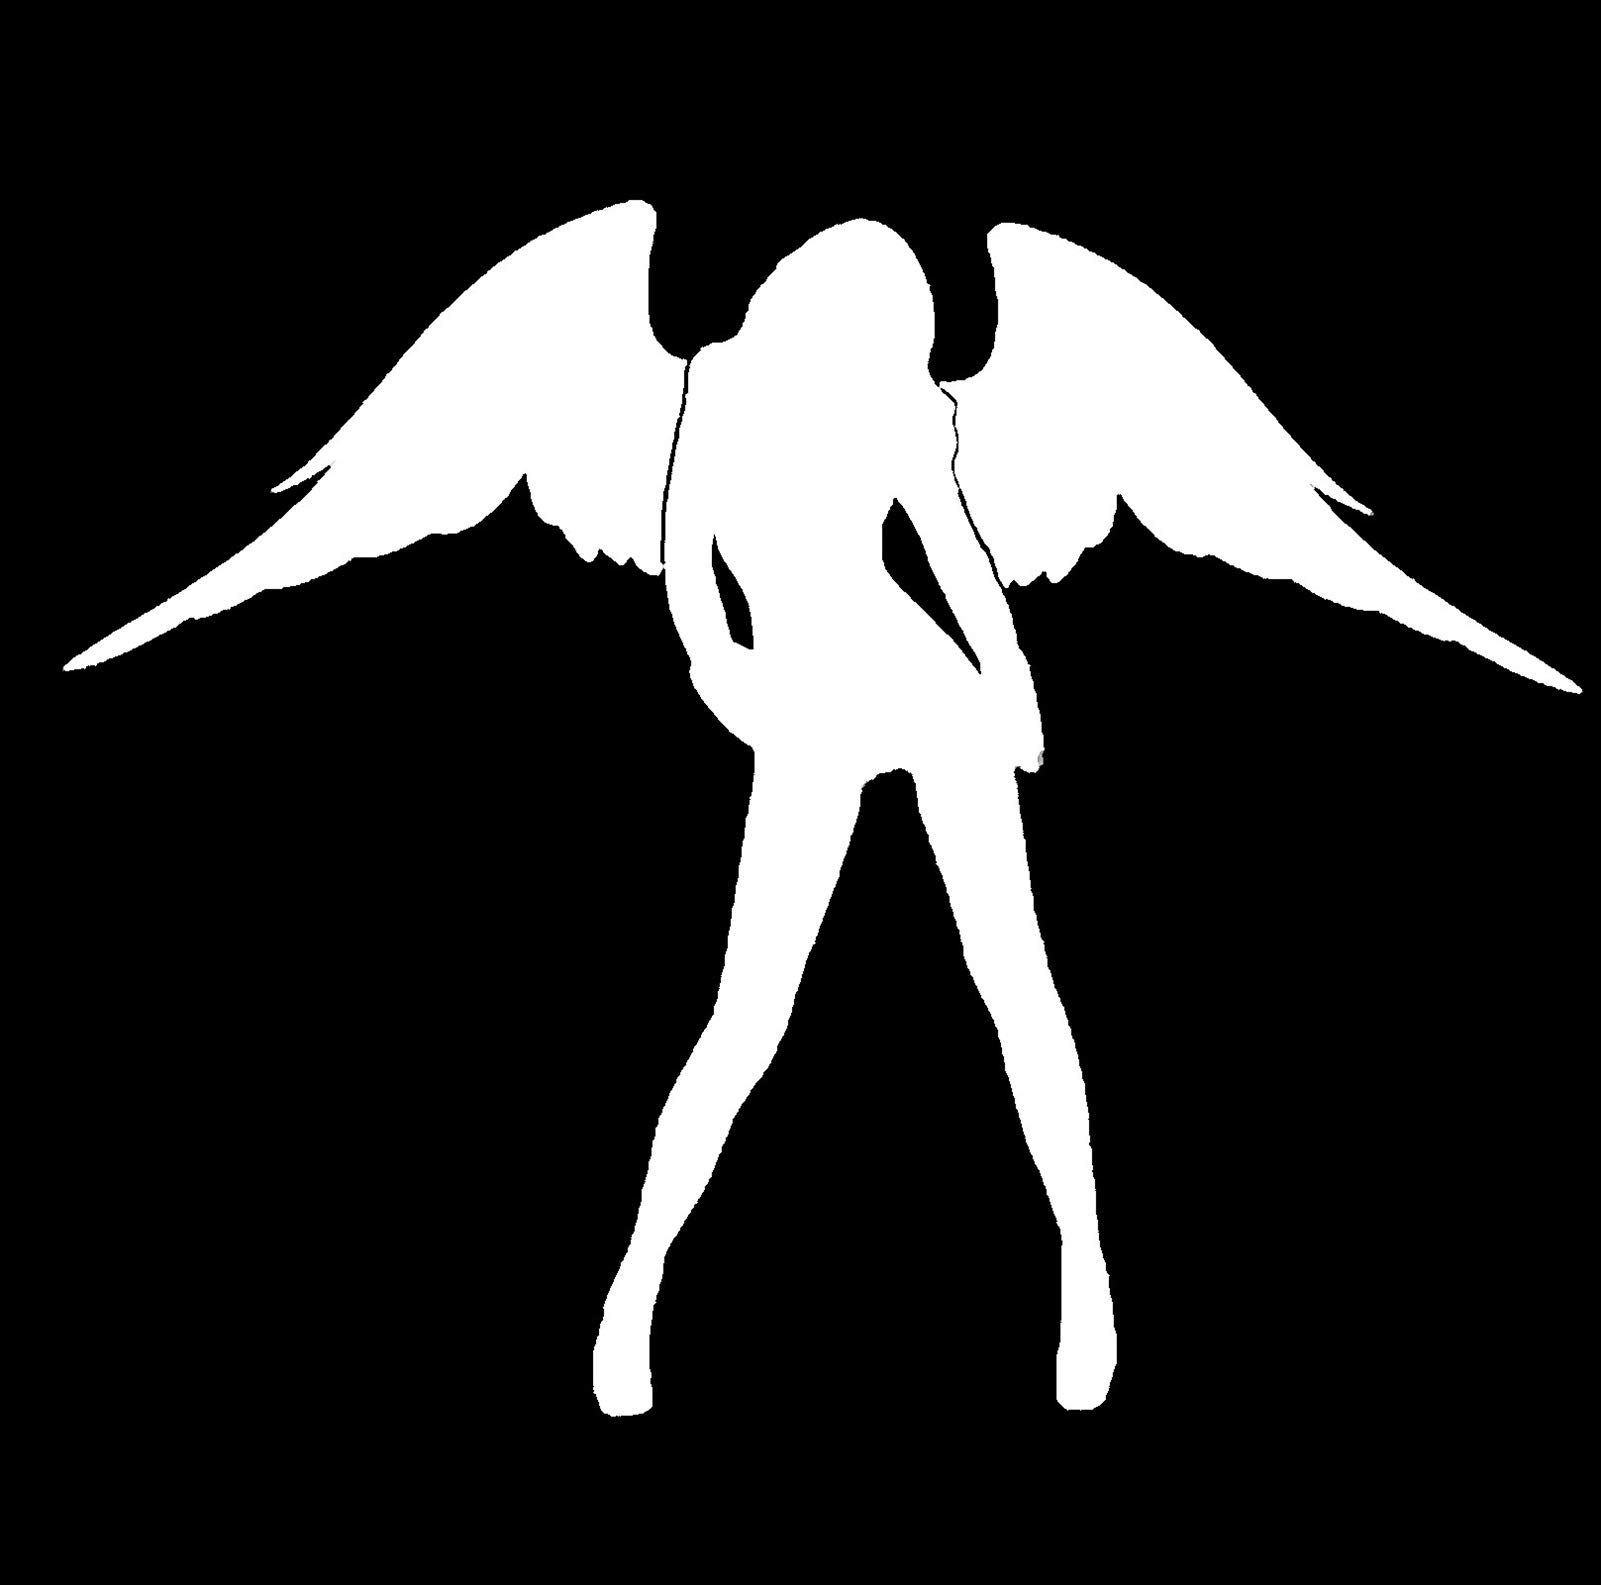 Autoaufkleber Engel und Teufel Autoaufkleber Beauty Fahrzeug Aufkleber Sexy Engel Teufel Autoaufkleber (Farbe: Weiß) von SOMEXI